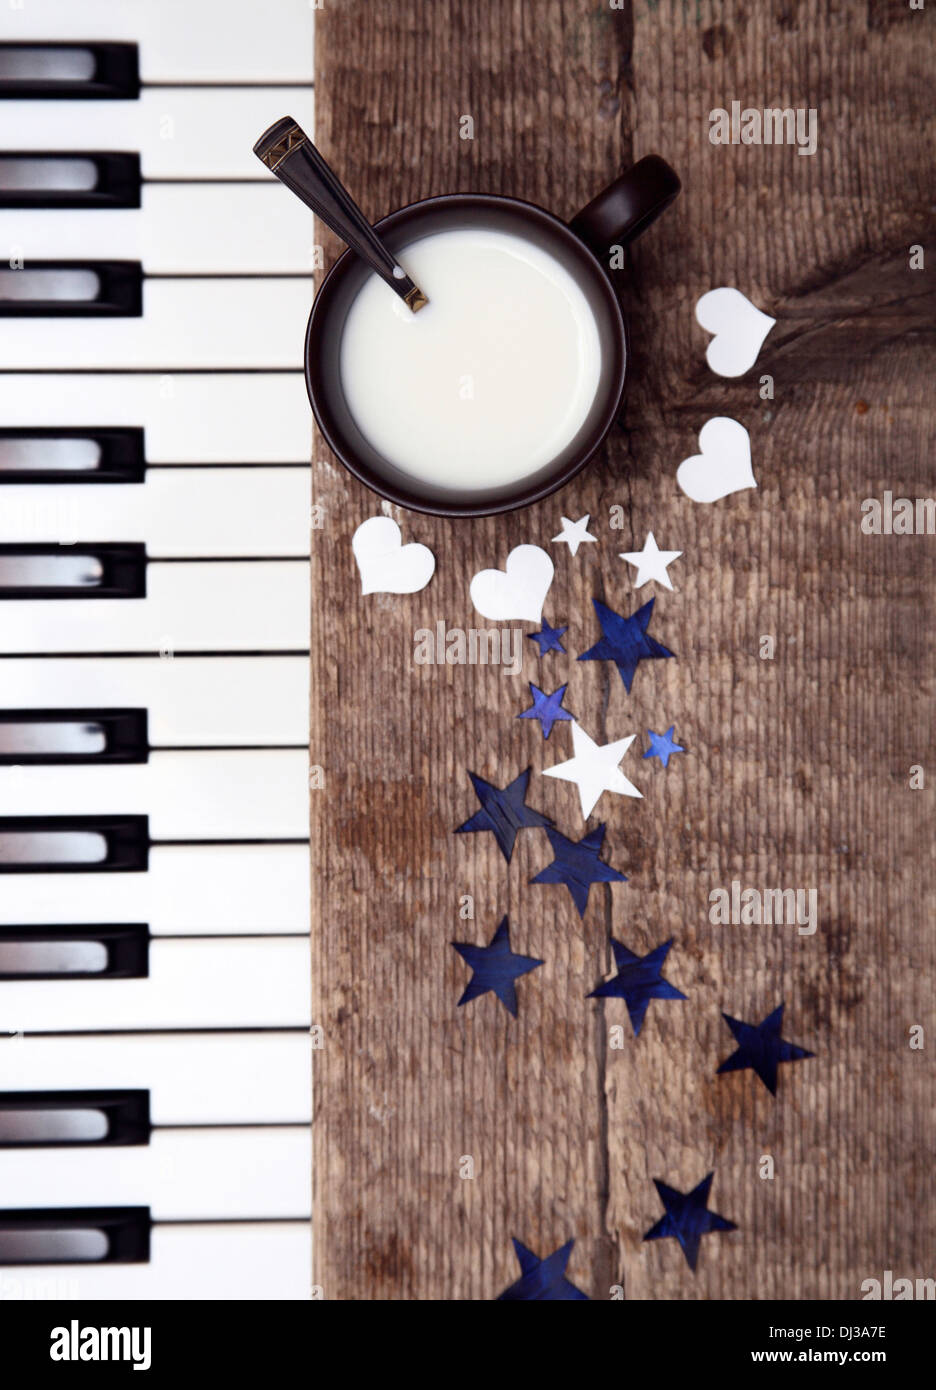 Image tonique, tasse de lait sur la table en bois, cuillère, Étoiles et coeurs en papier, pianoforte Banque D'Images